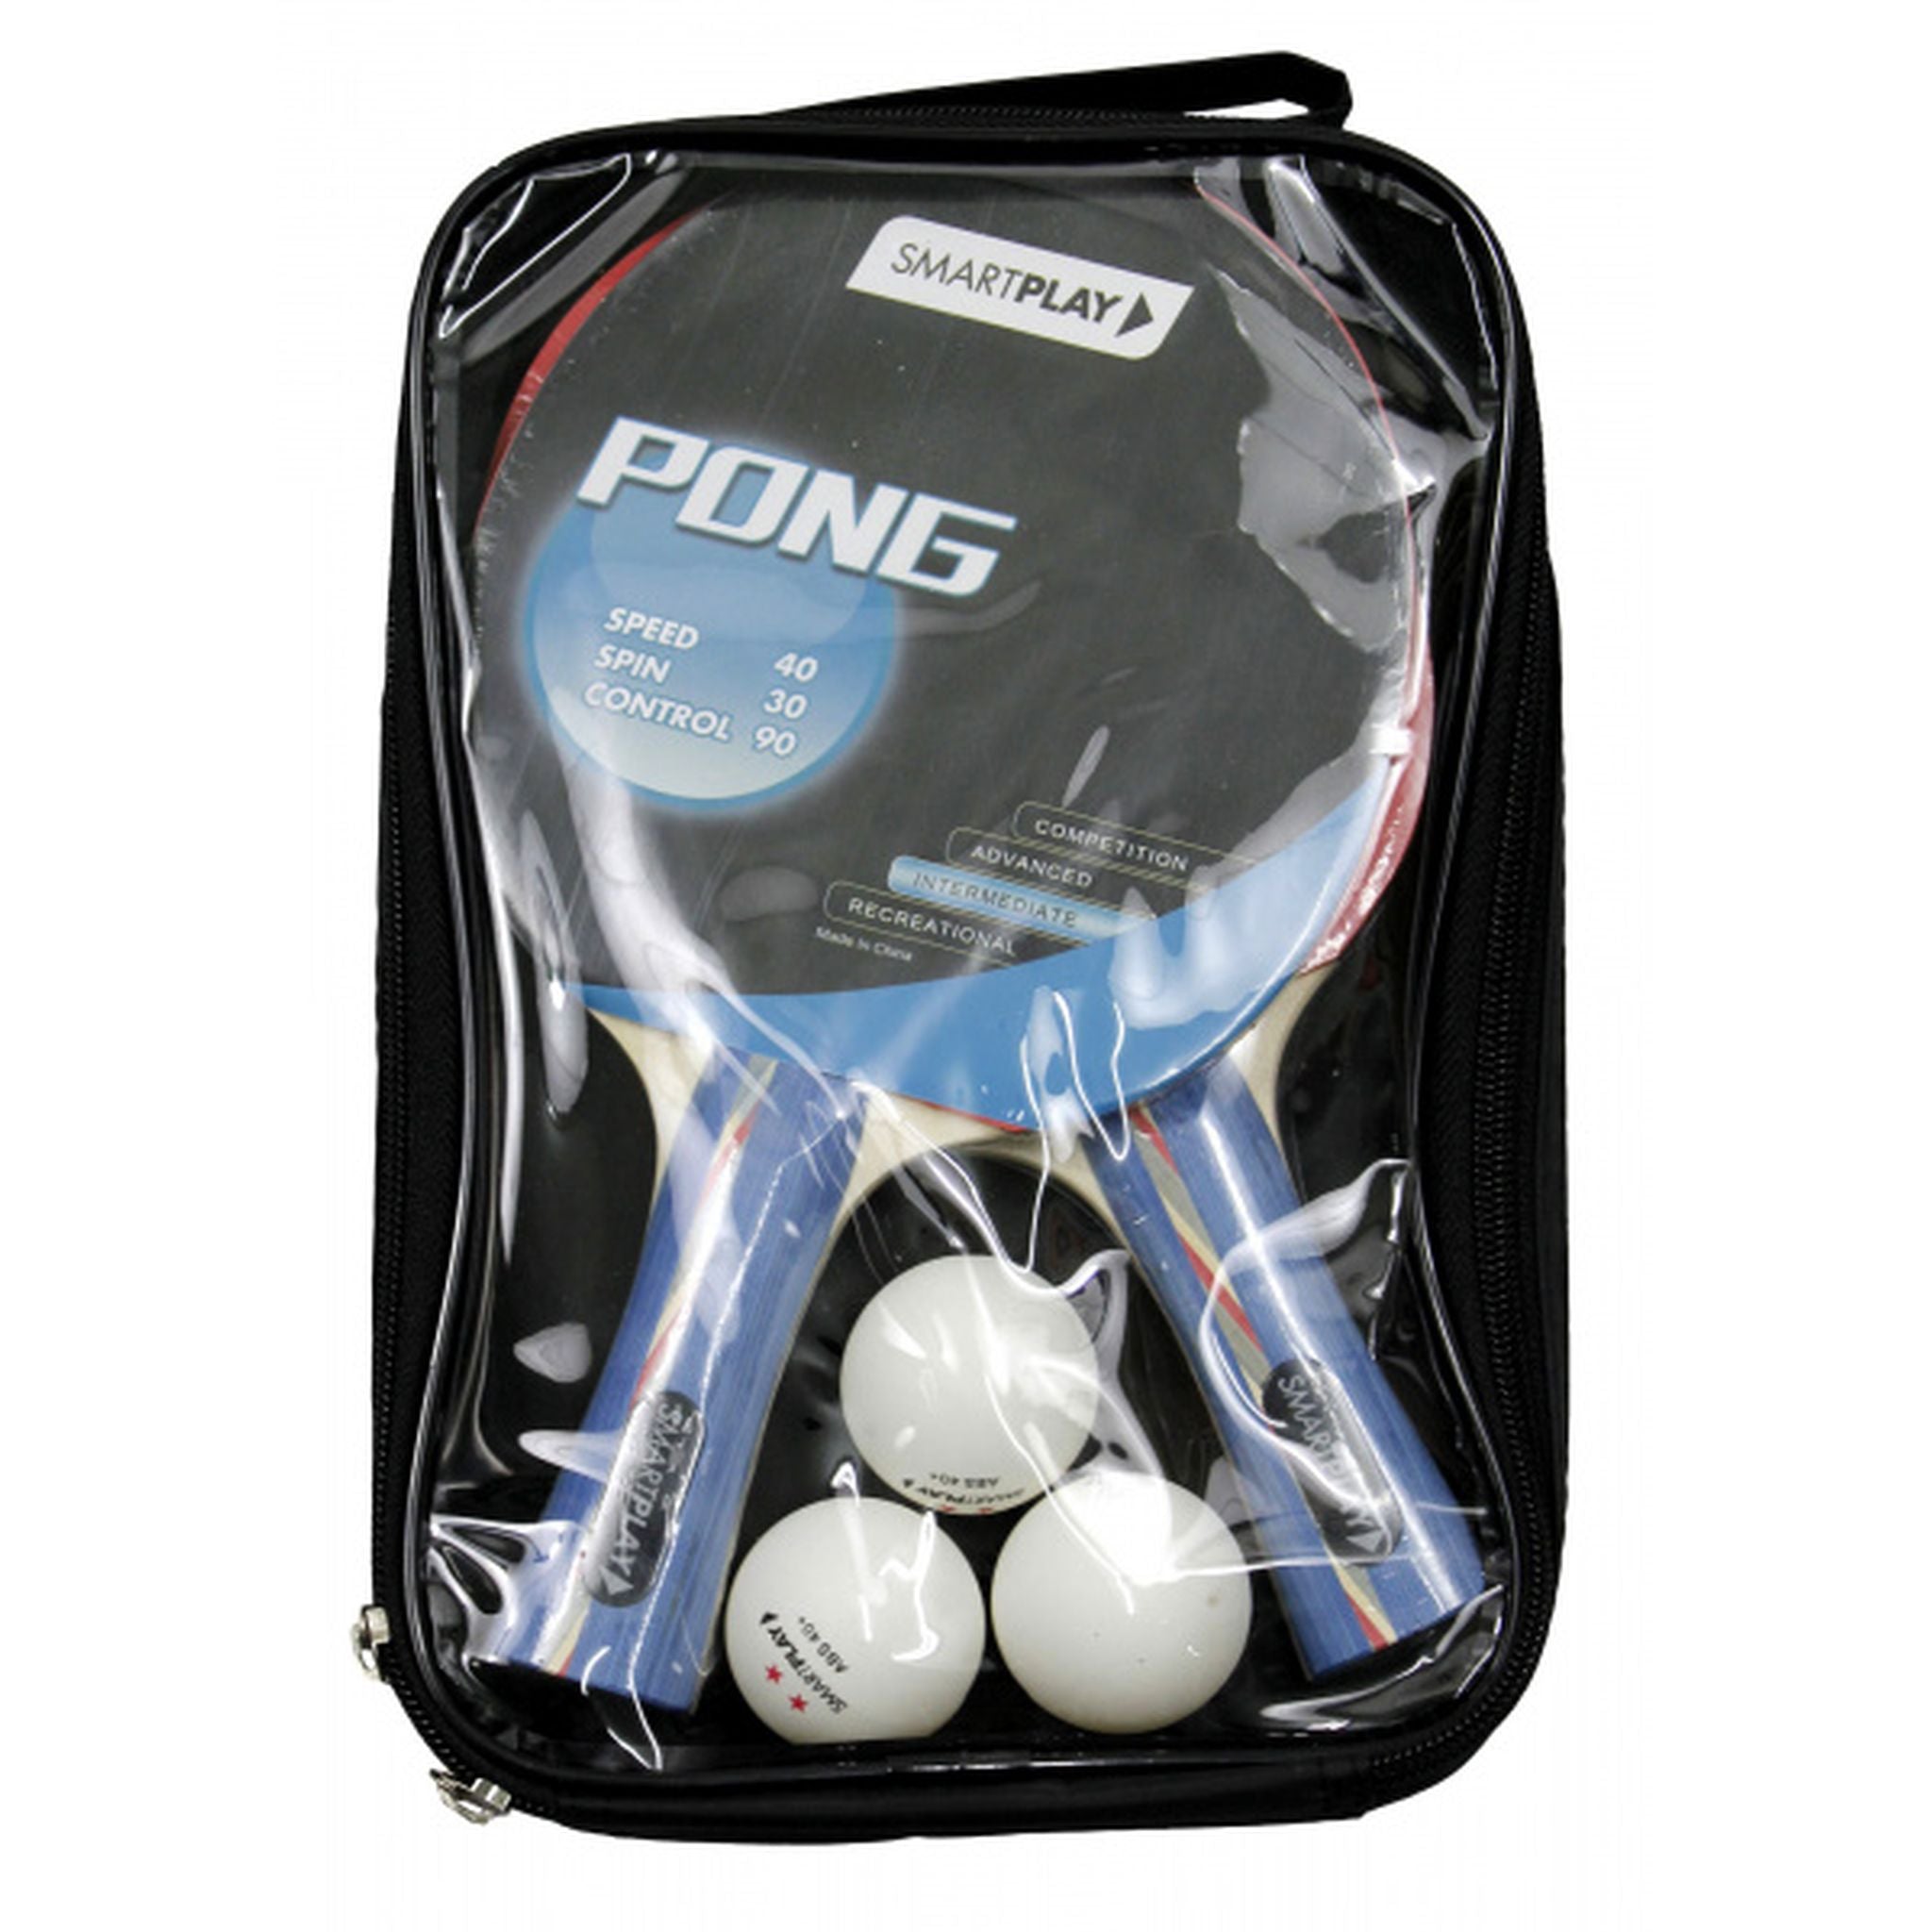 SMARTPLAY PONG 2 Player Table Tennis Set